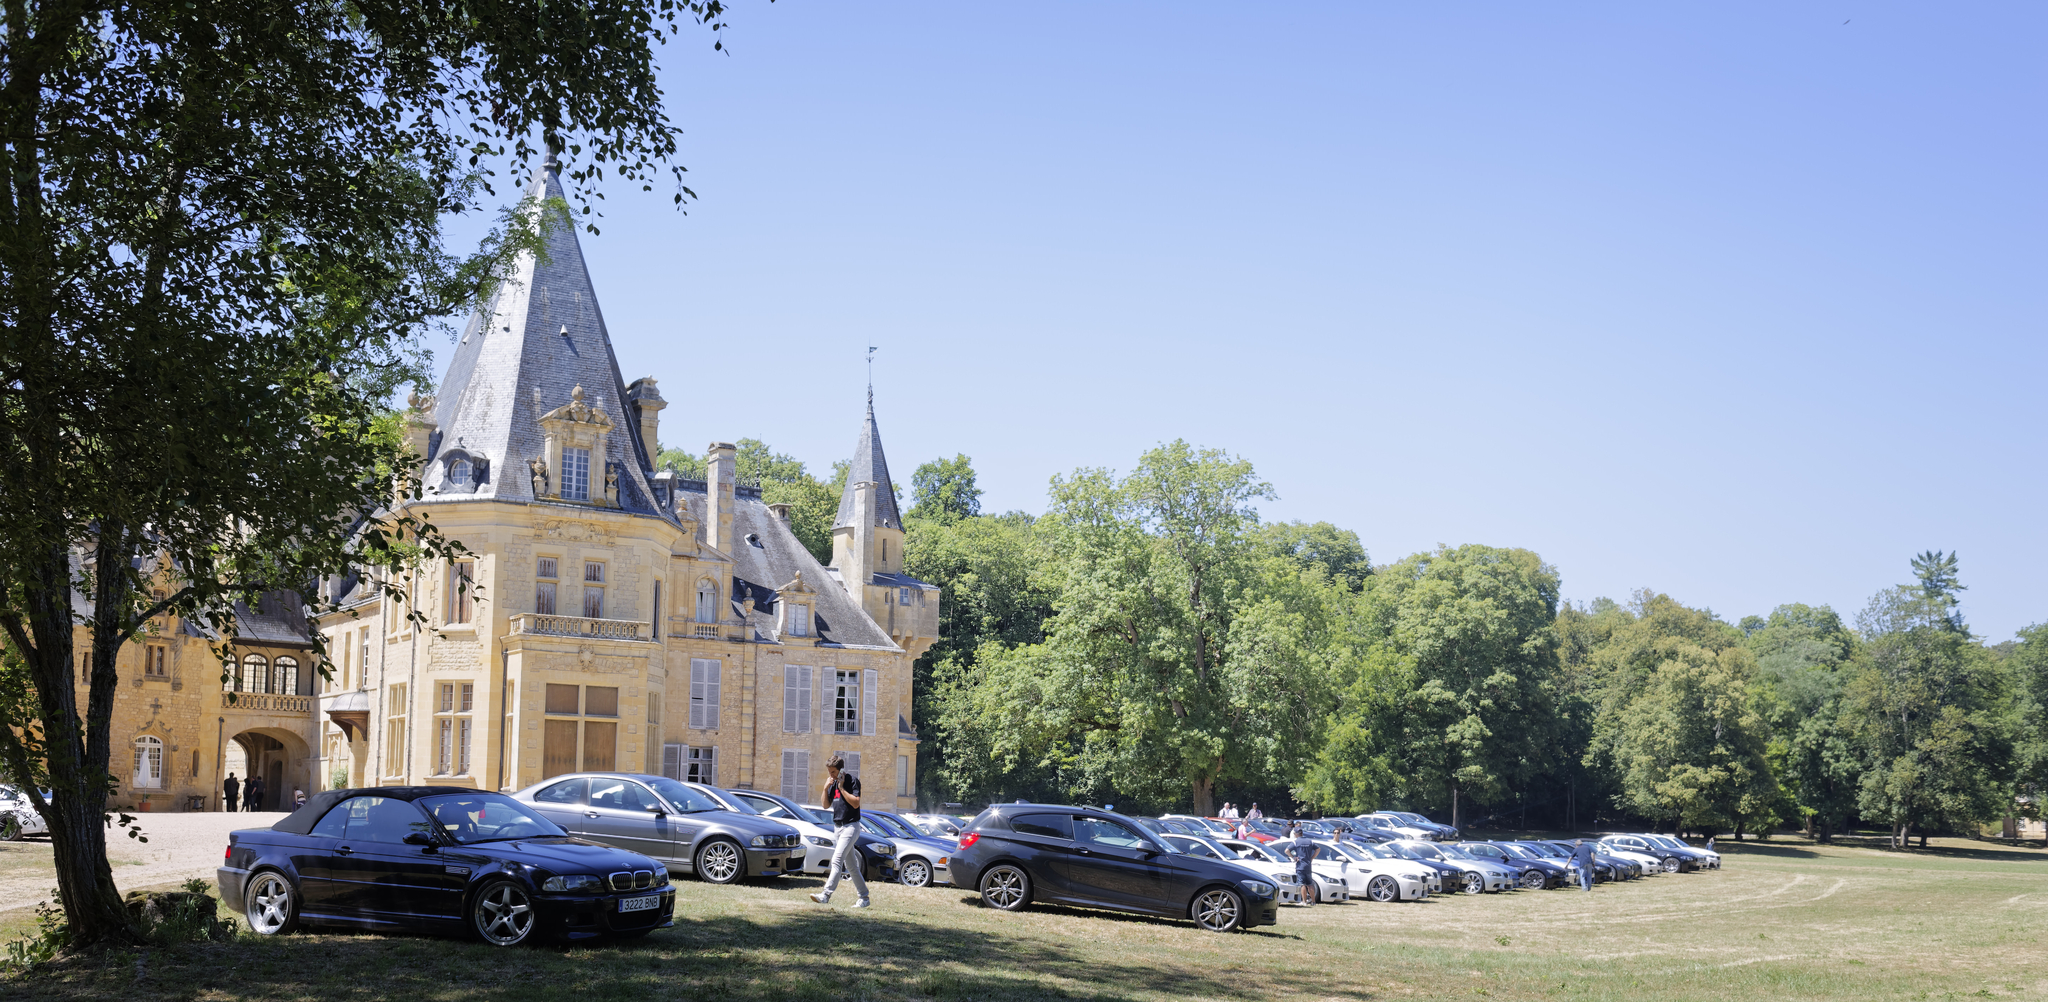 21.07.2015 - Château de Prye, La Fermeté